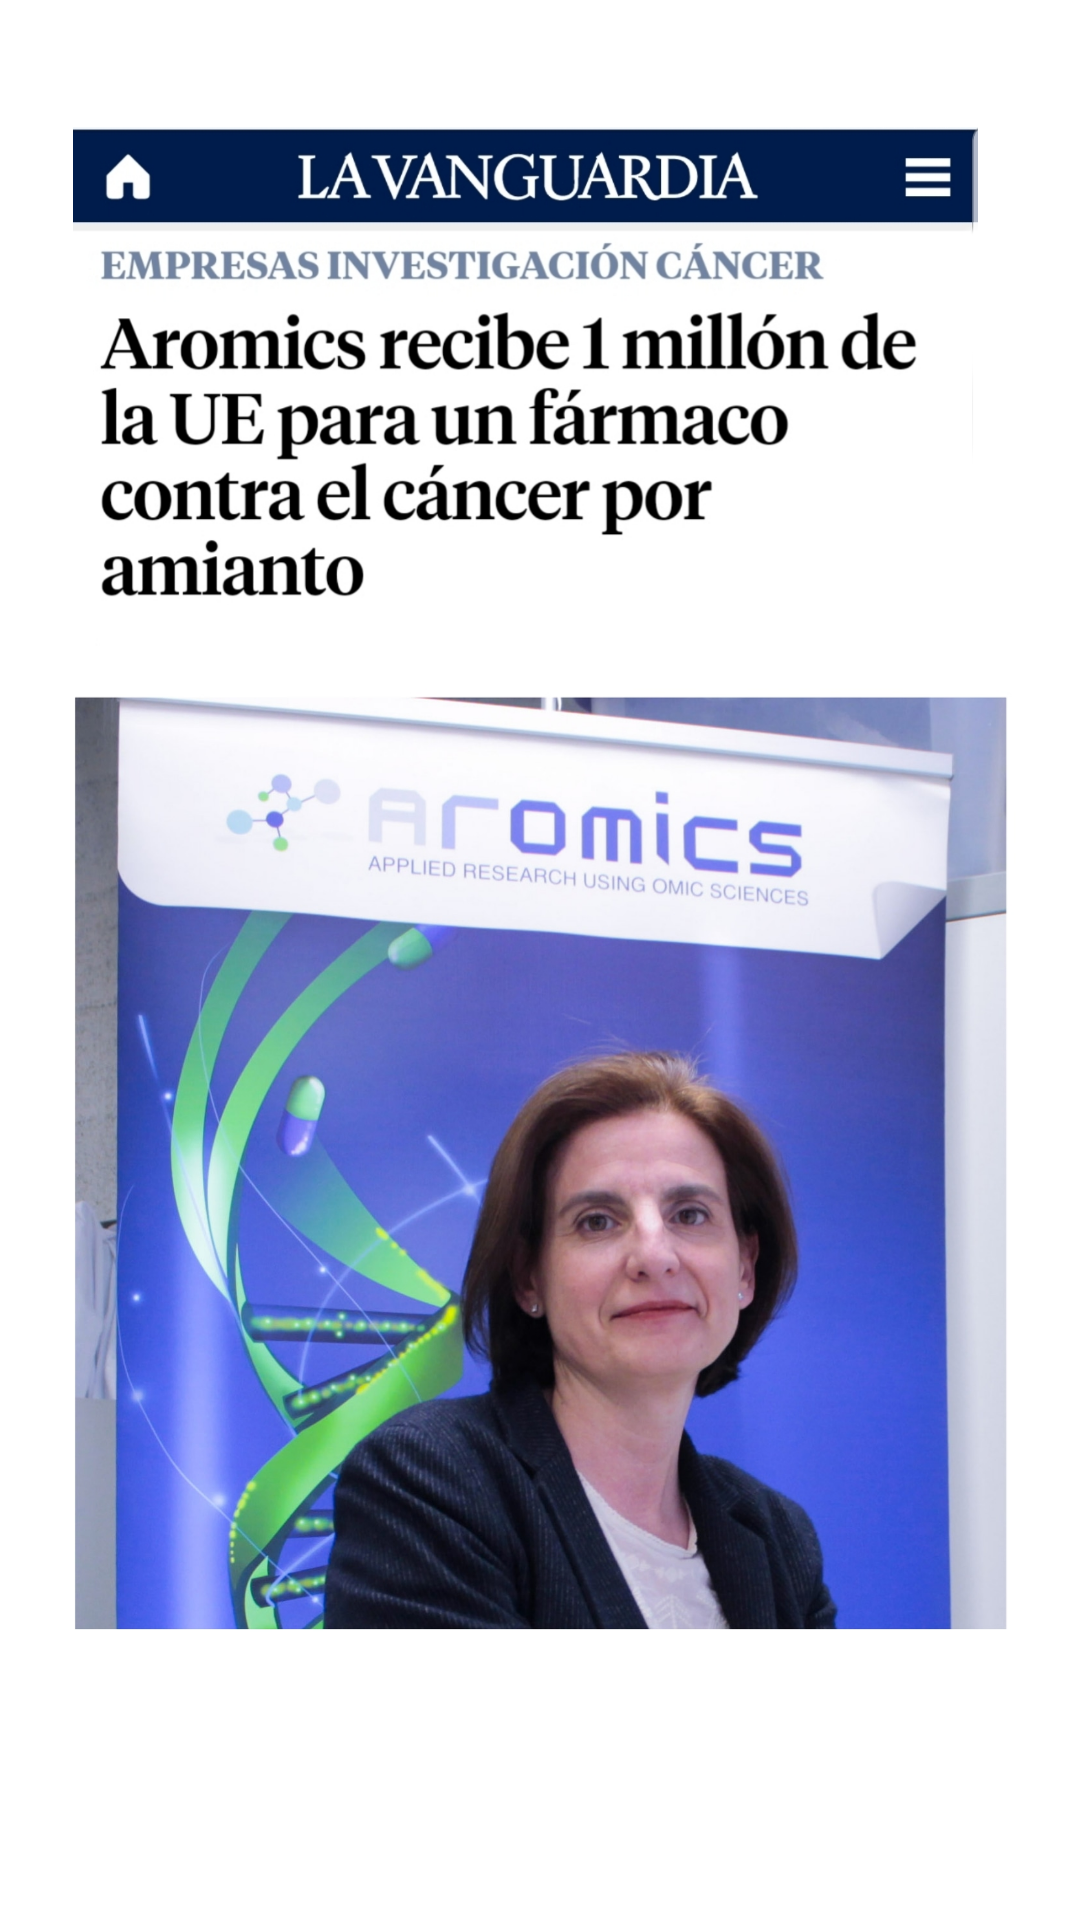 AROMICS recibe 1 Millón de Euros para impulsar su fármaco contra el cáncer